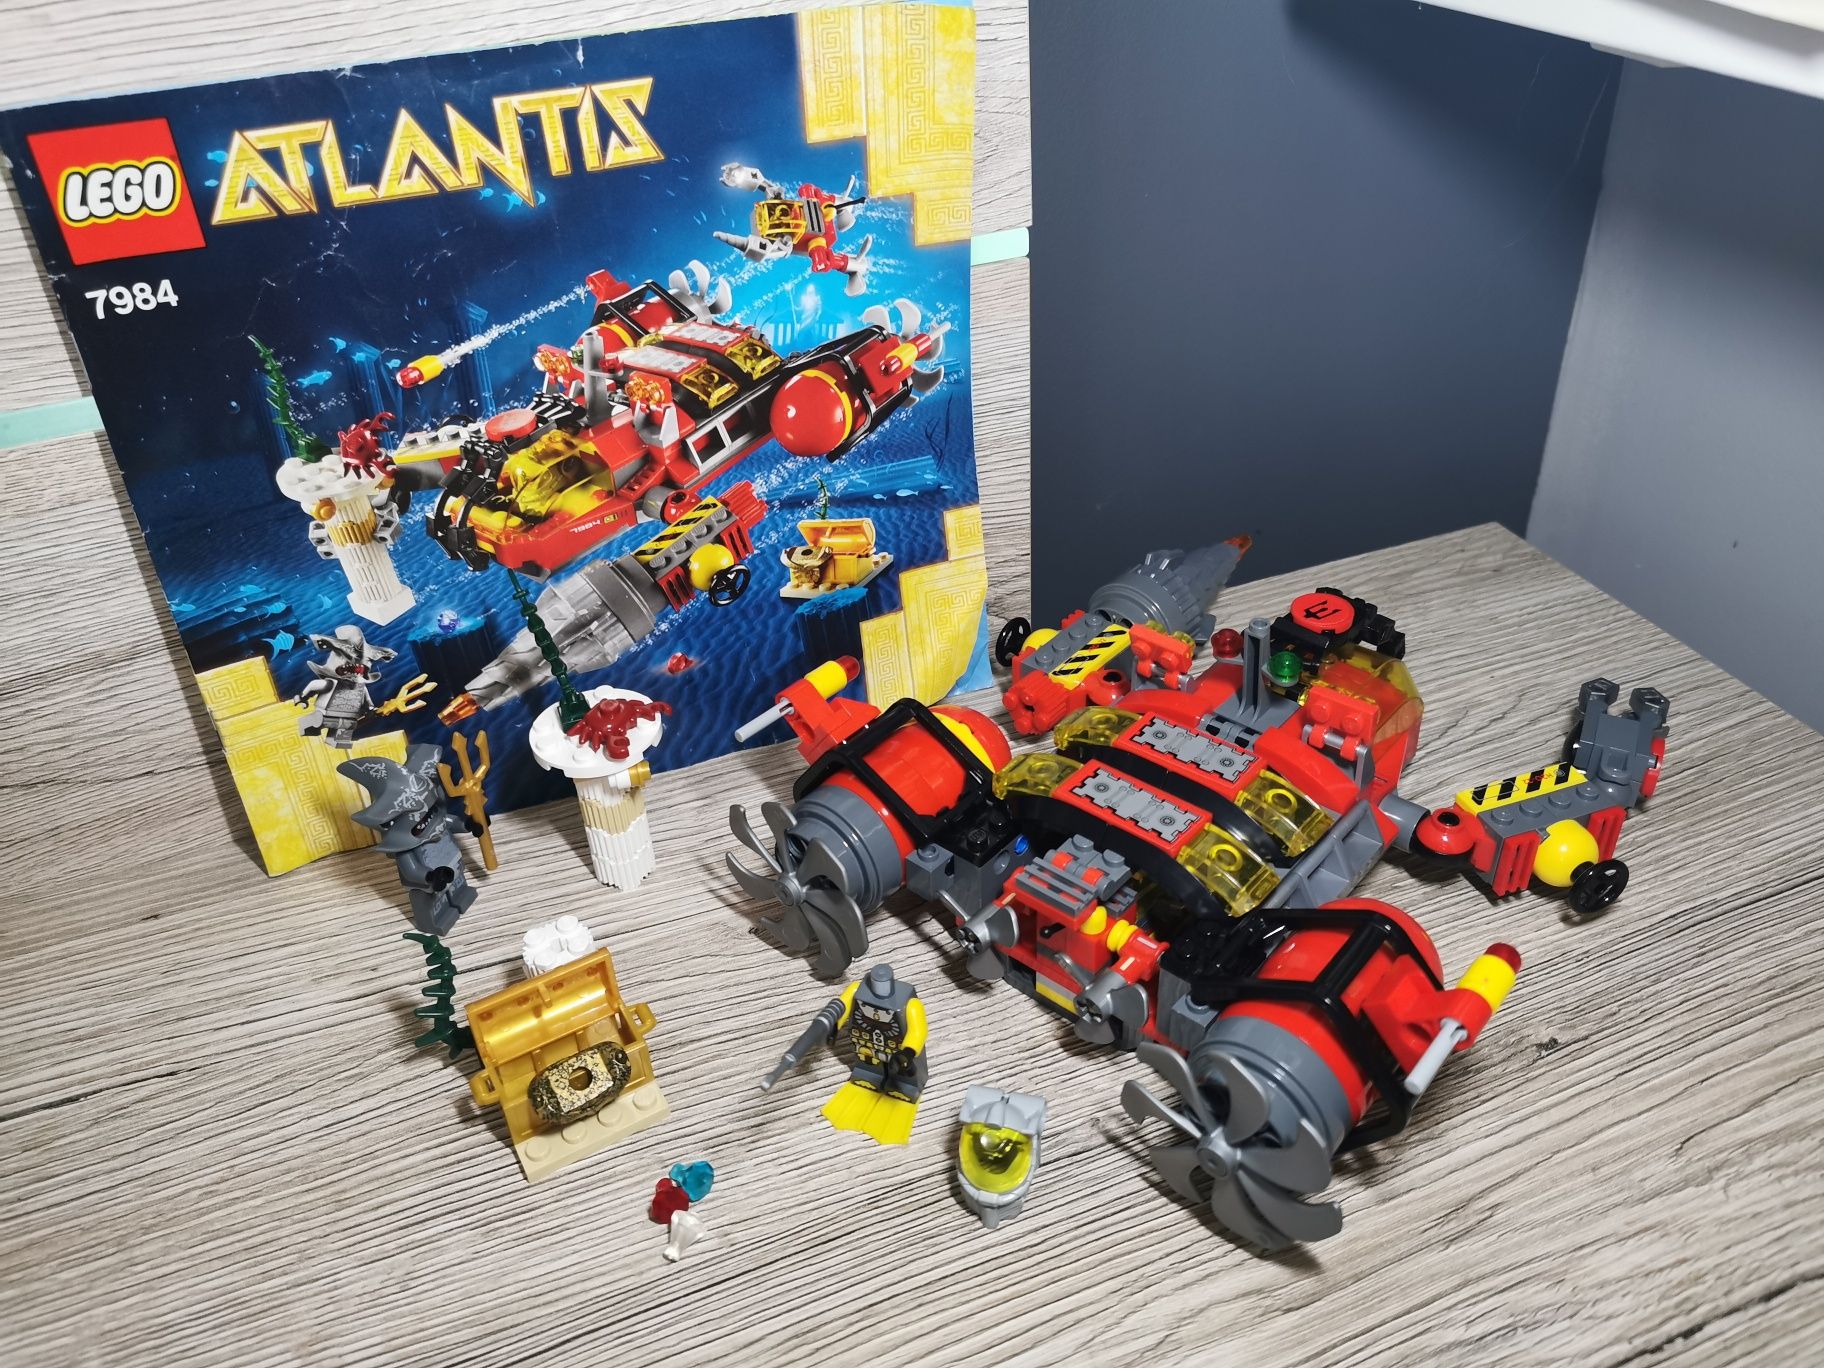 Lego Atlantis 7984 Niszczyciel głębinowy